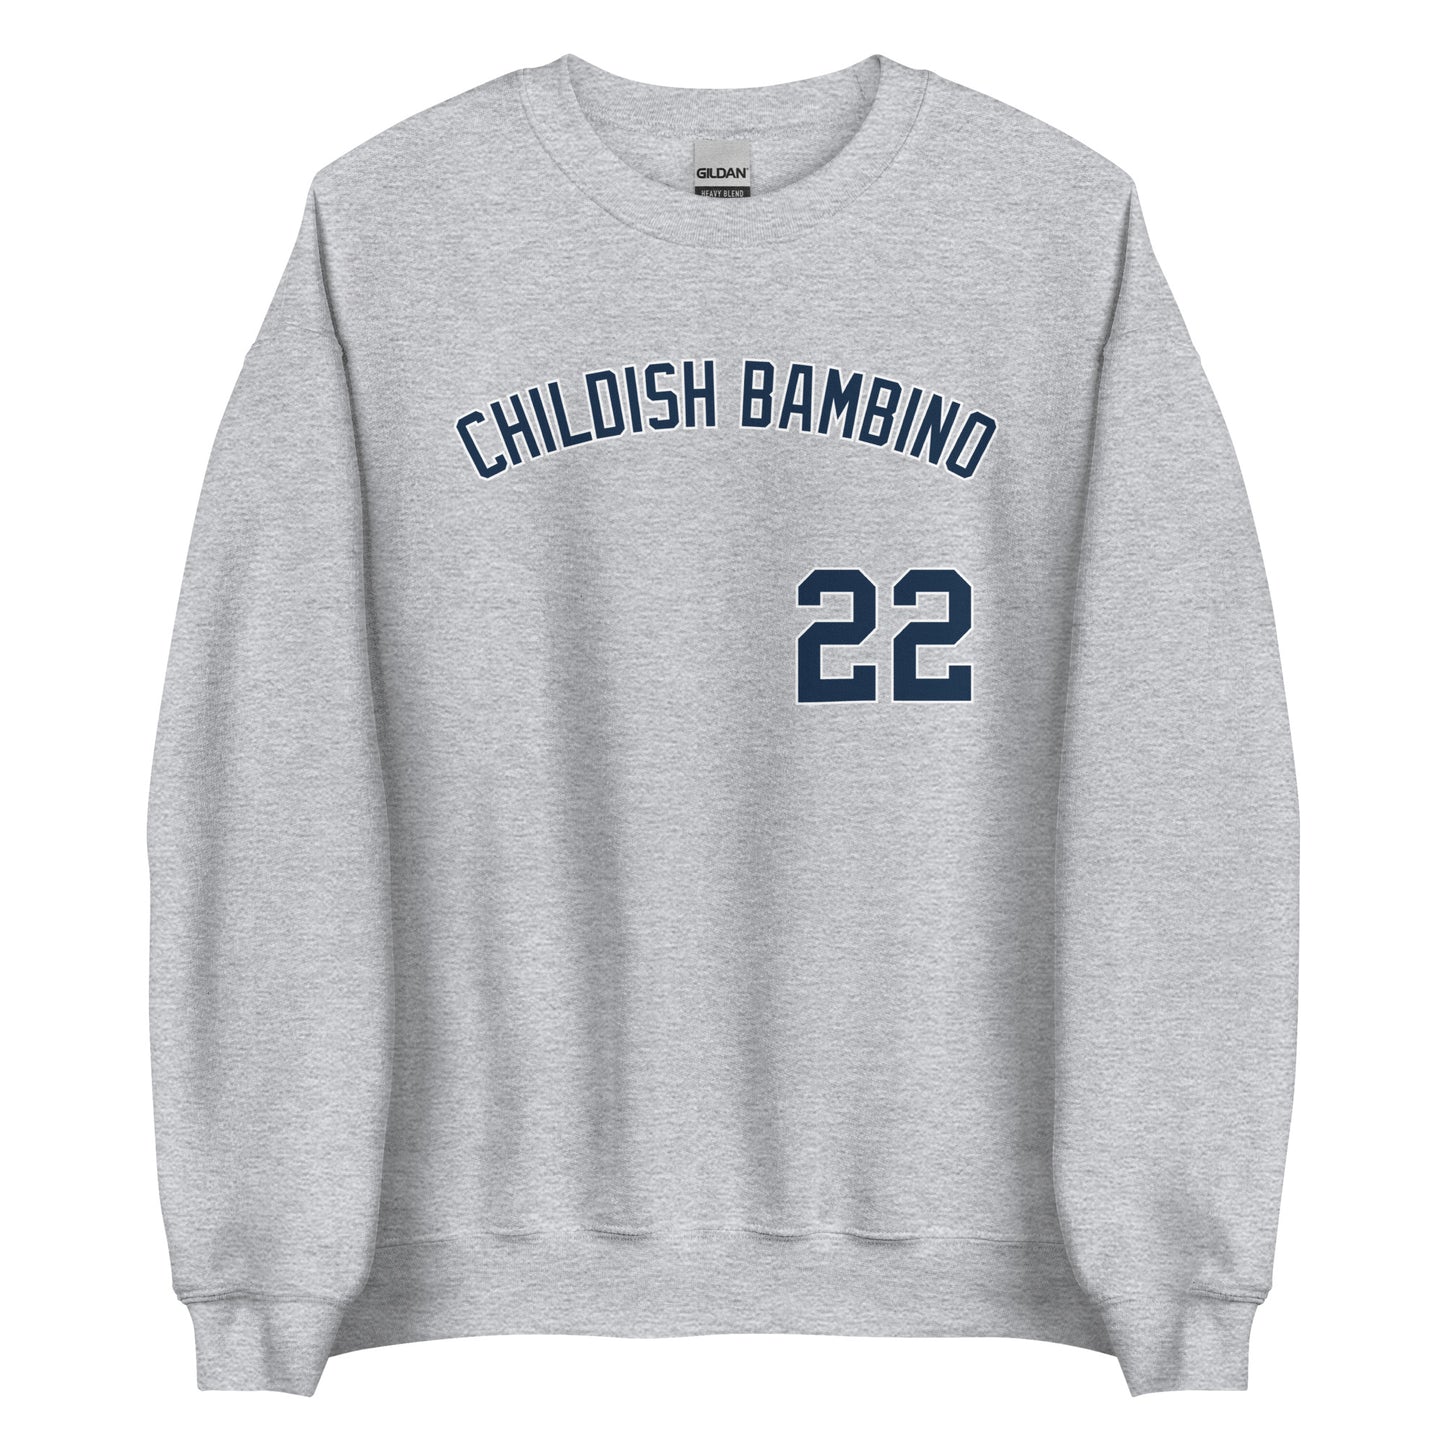 Childish Bambino | Crewneck Sweatshirt